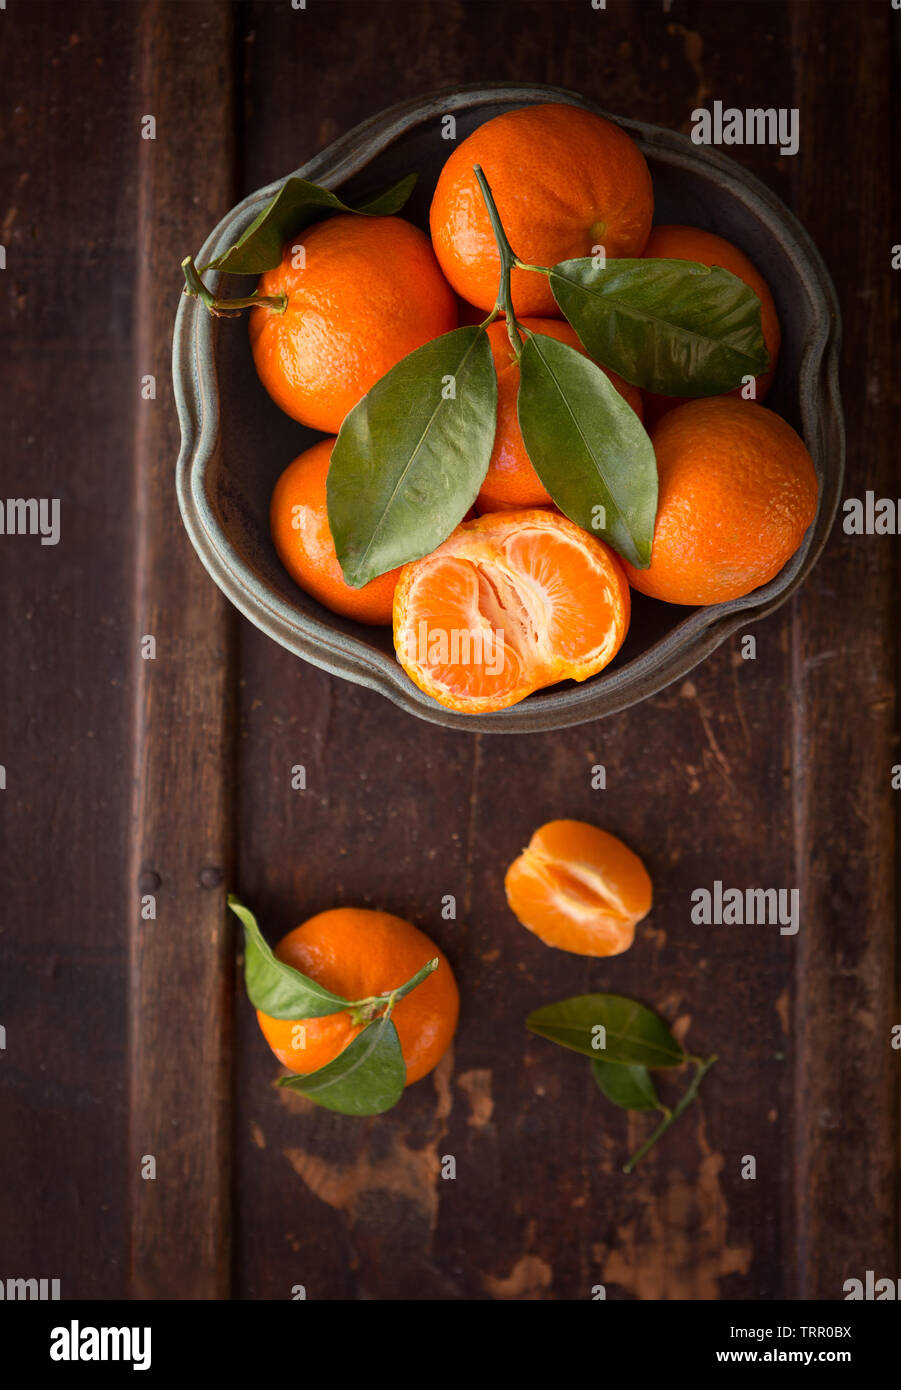 Vue de dessus de la mandarine sur une surface en bois sombre dans un bol en faïence Banque D'Images